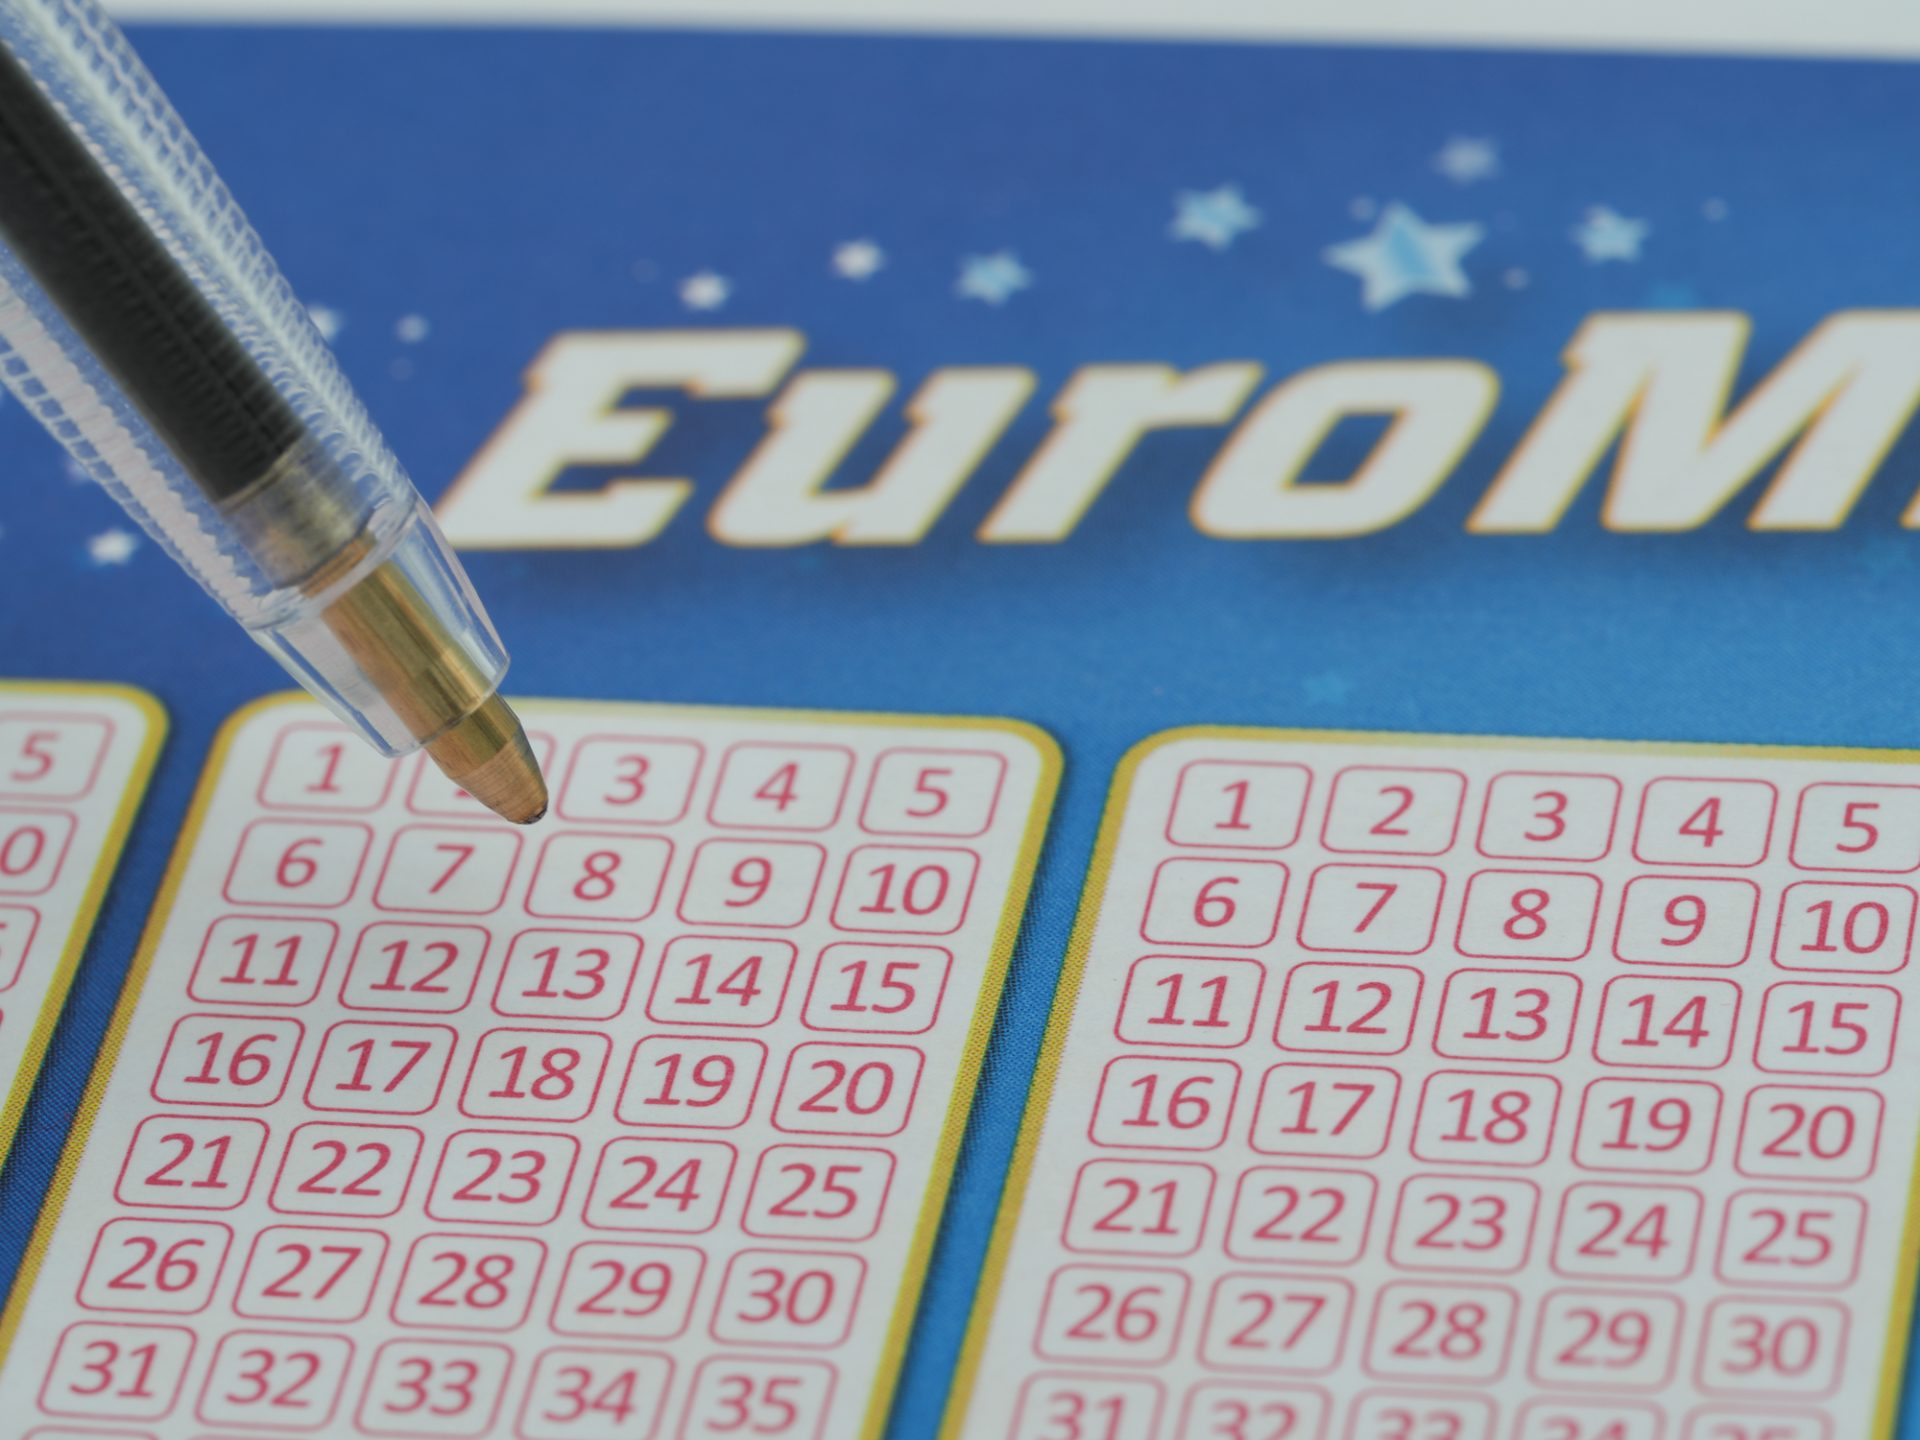 Conheça a combinação vencedora do Euromilhões desta sexta-feira